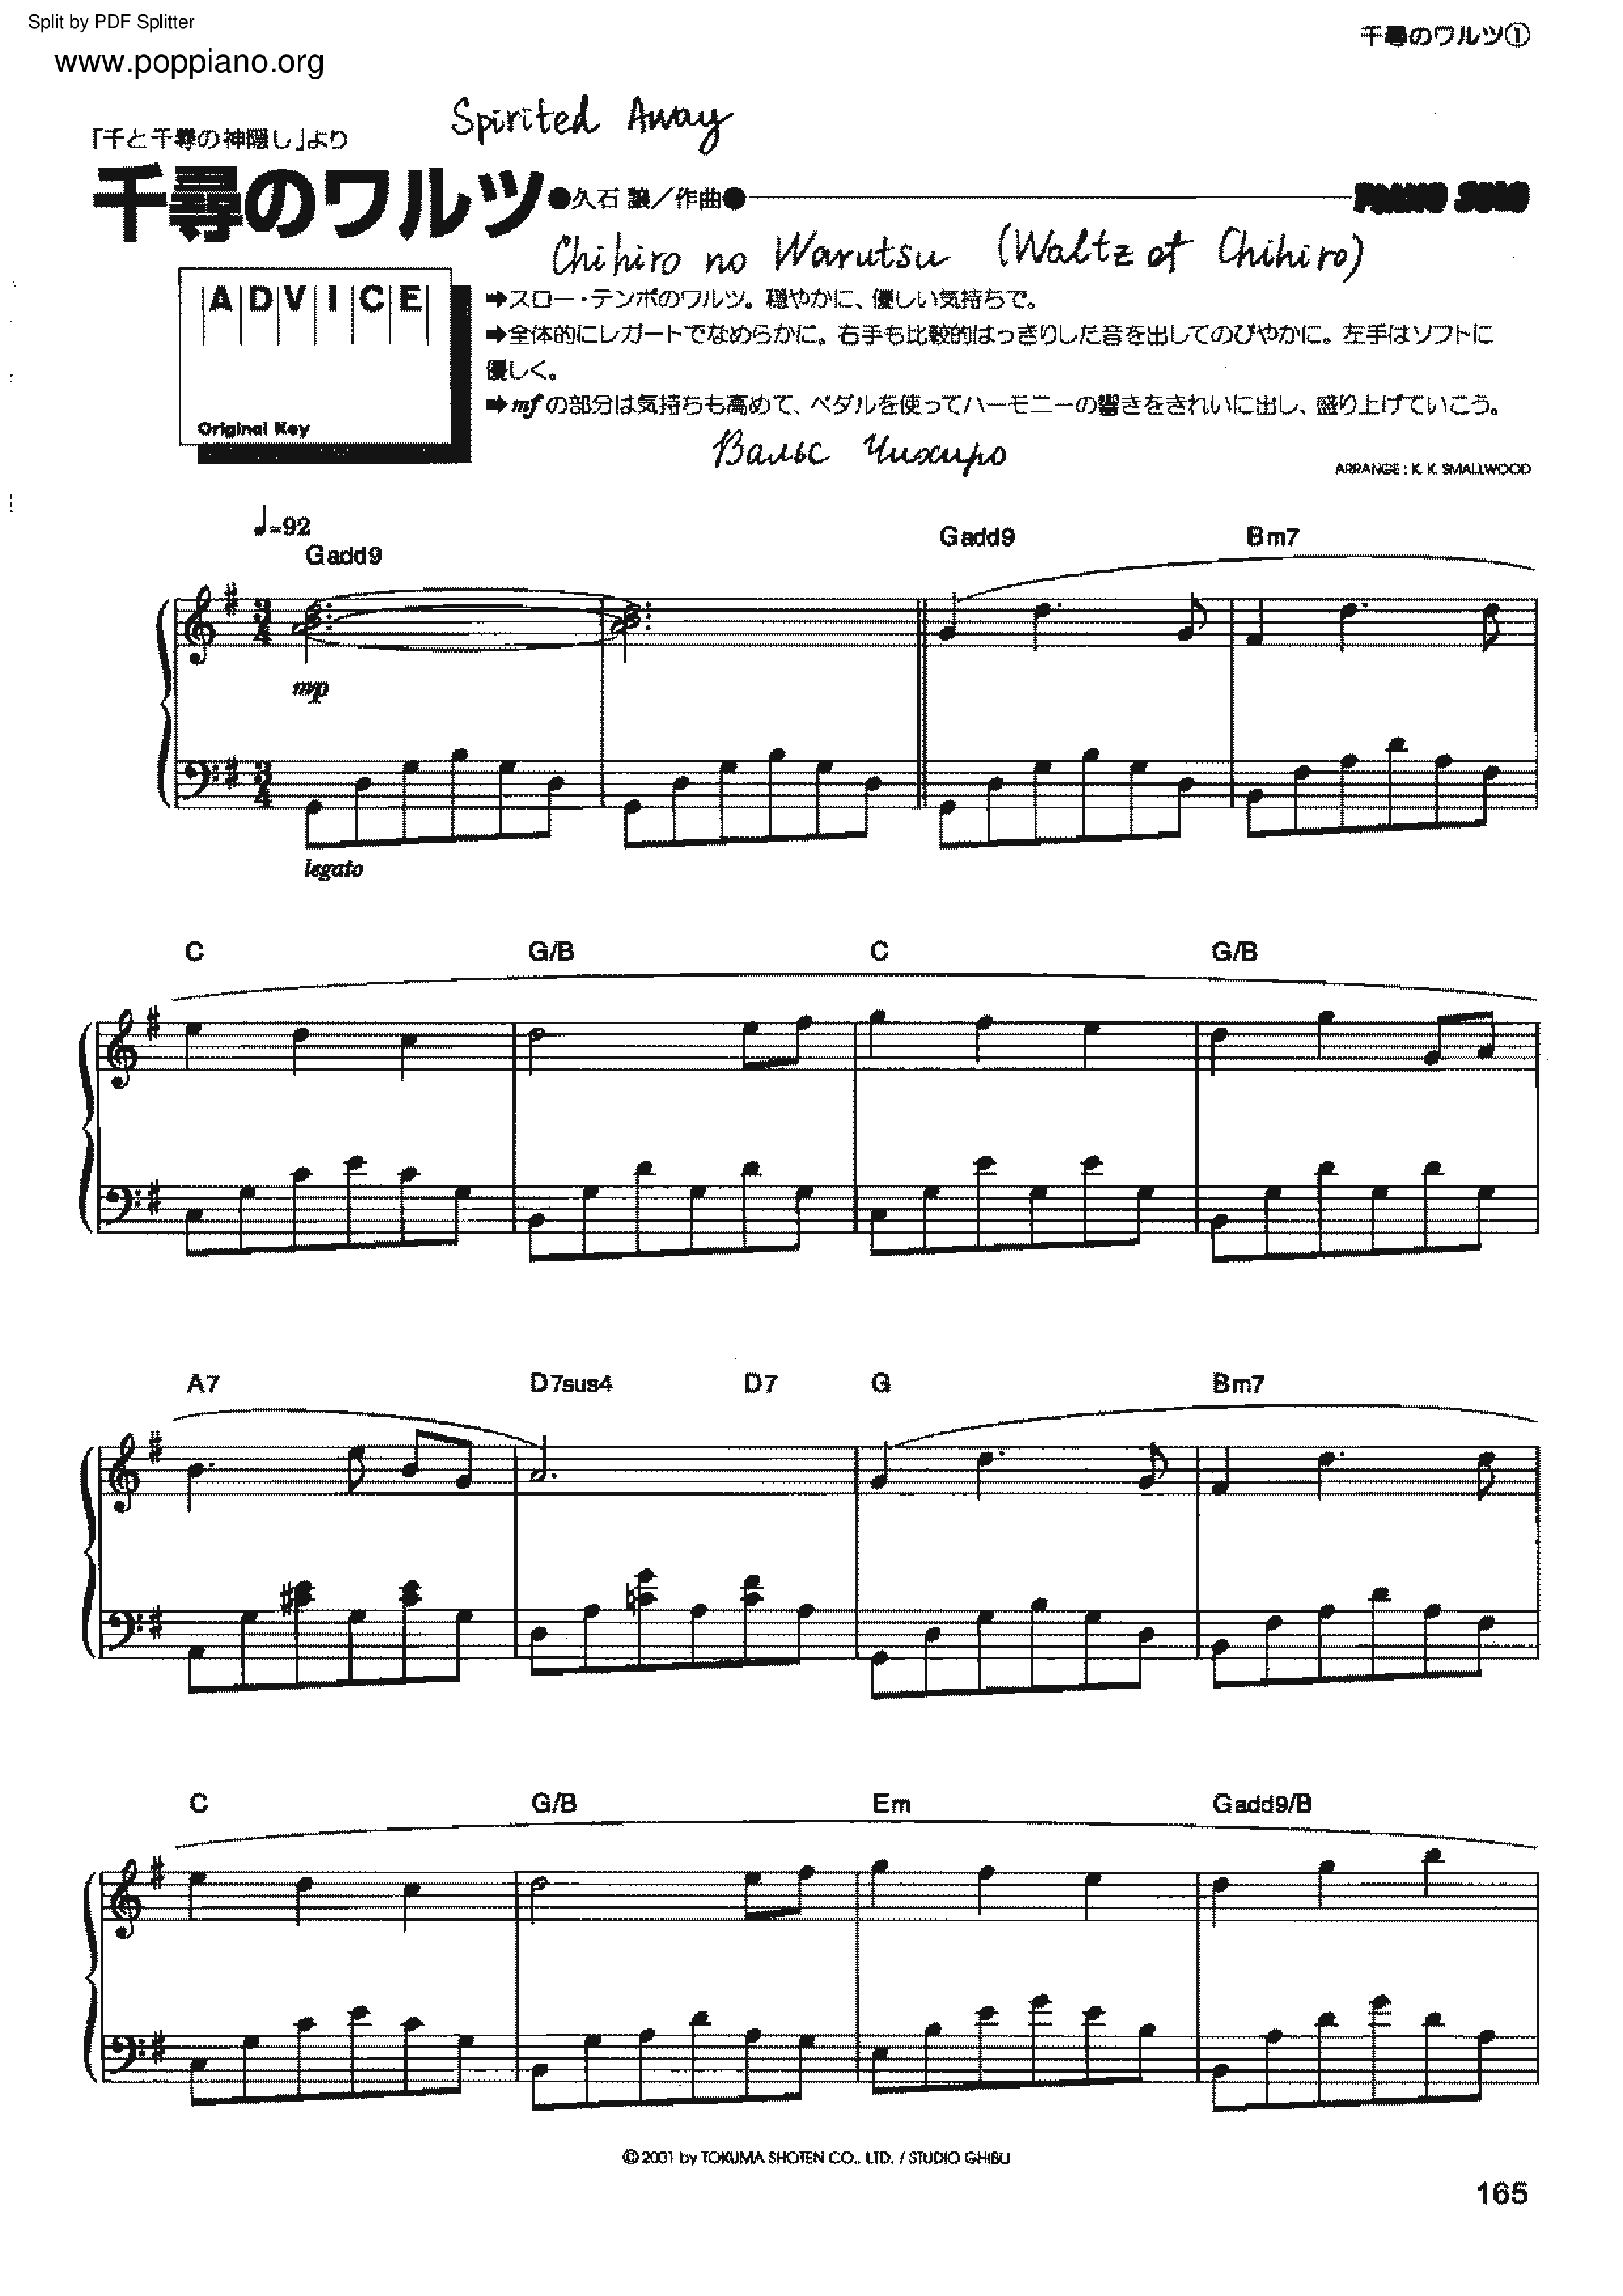 Spirited Away - Waltz Of Chihiro Score